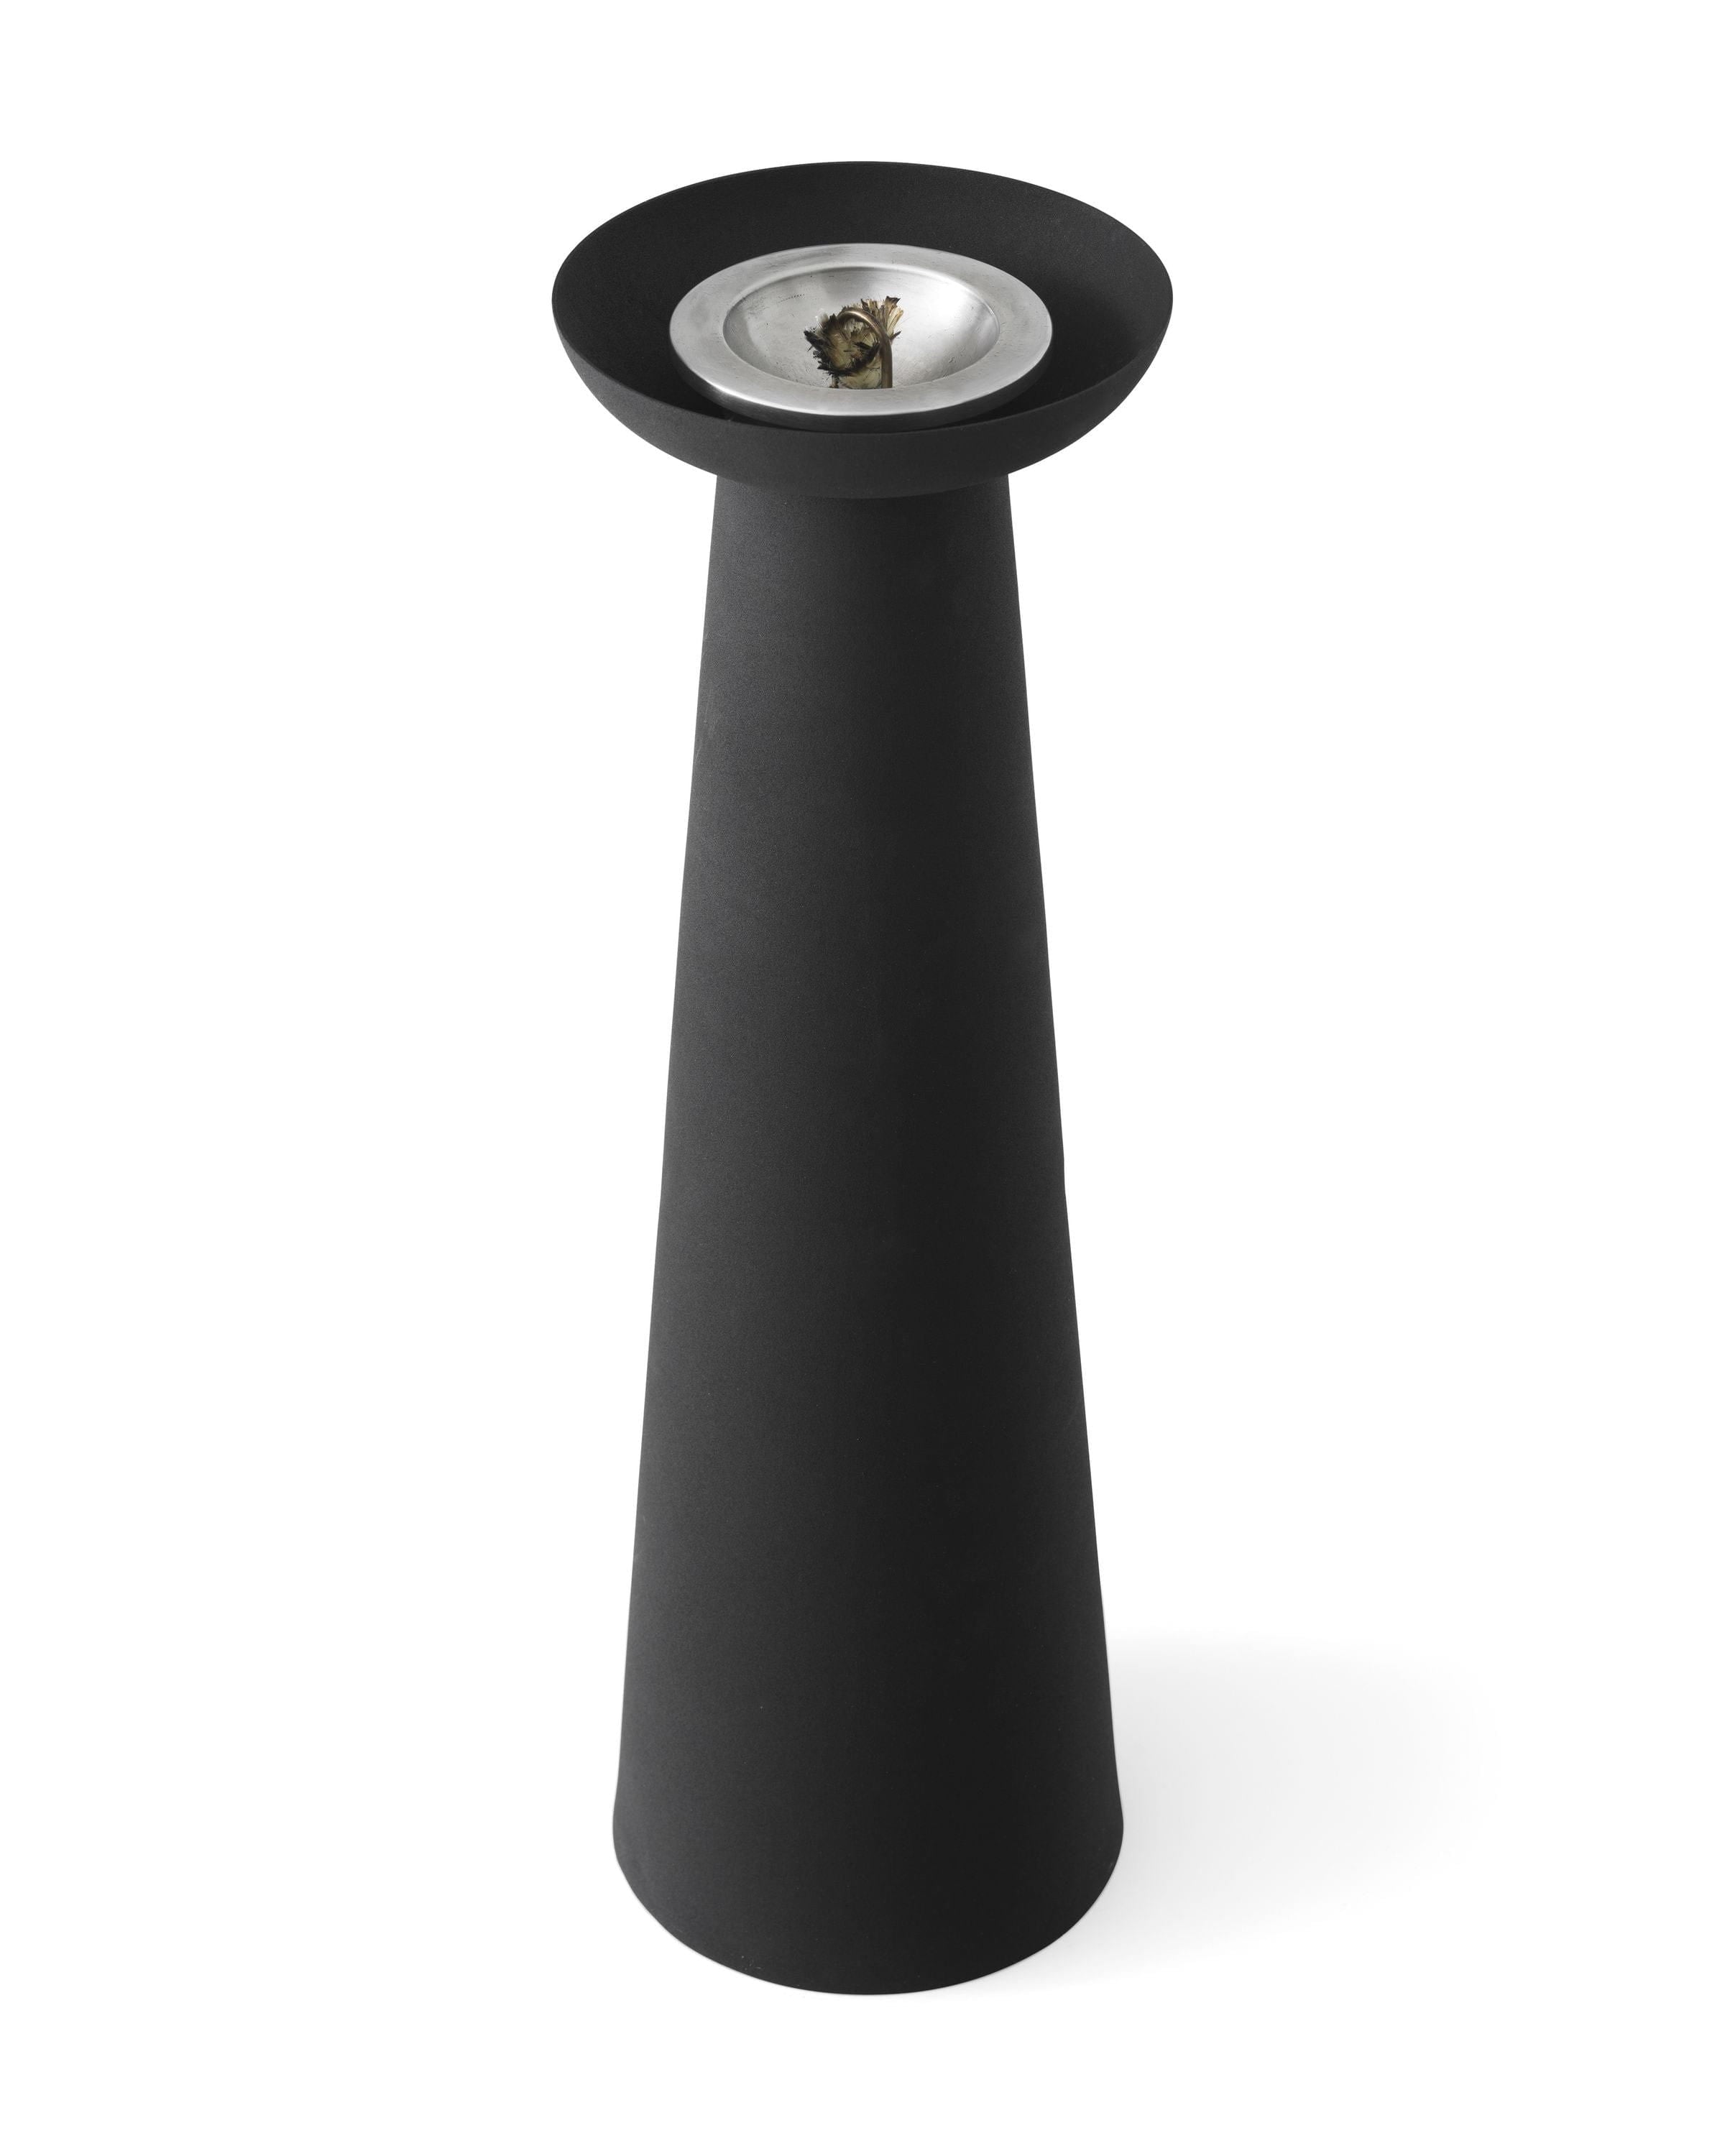 Audo Copenhagen Meira olejová lampa černá, H53 cm